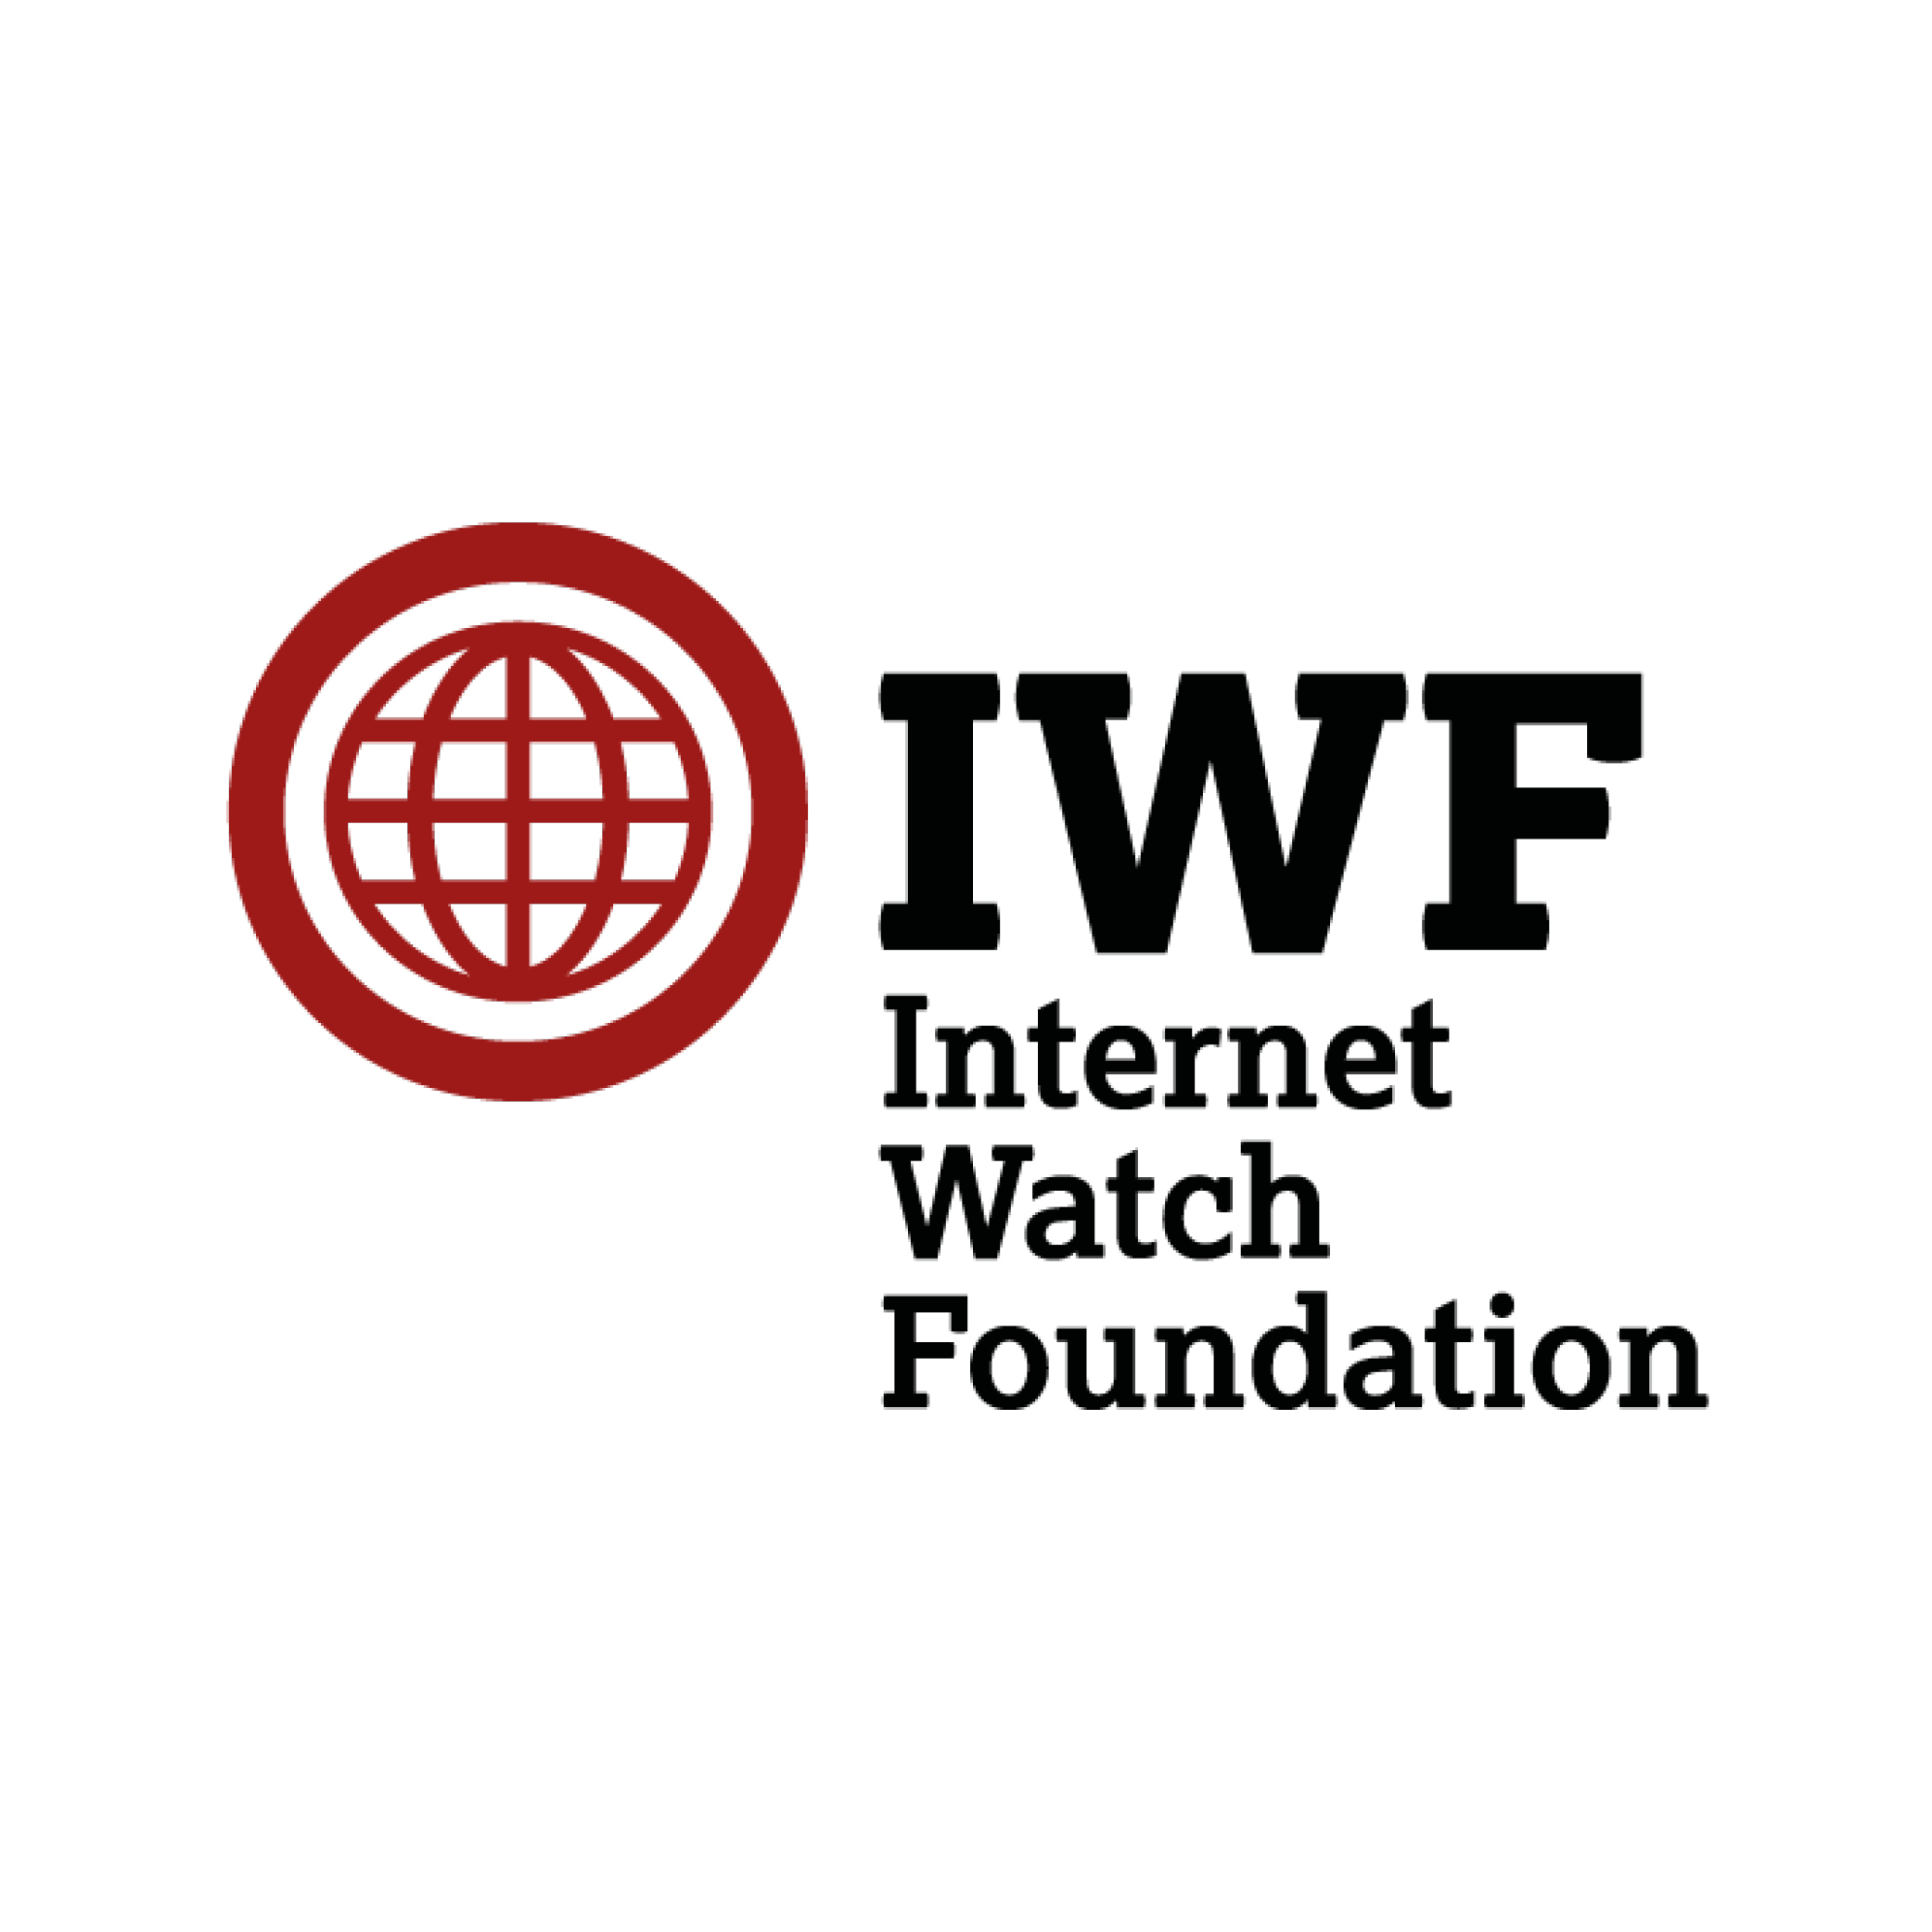 iwf foundation image